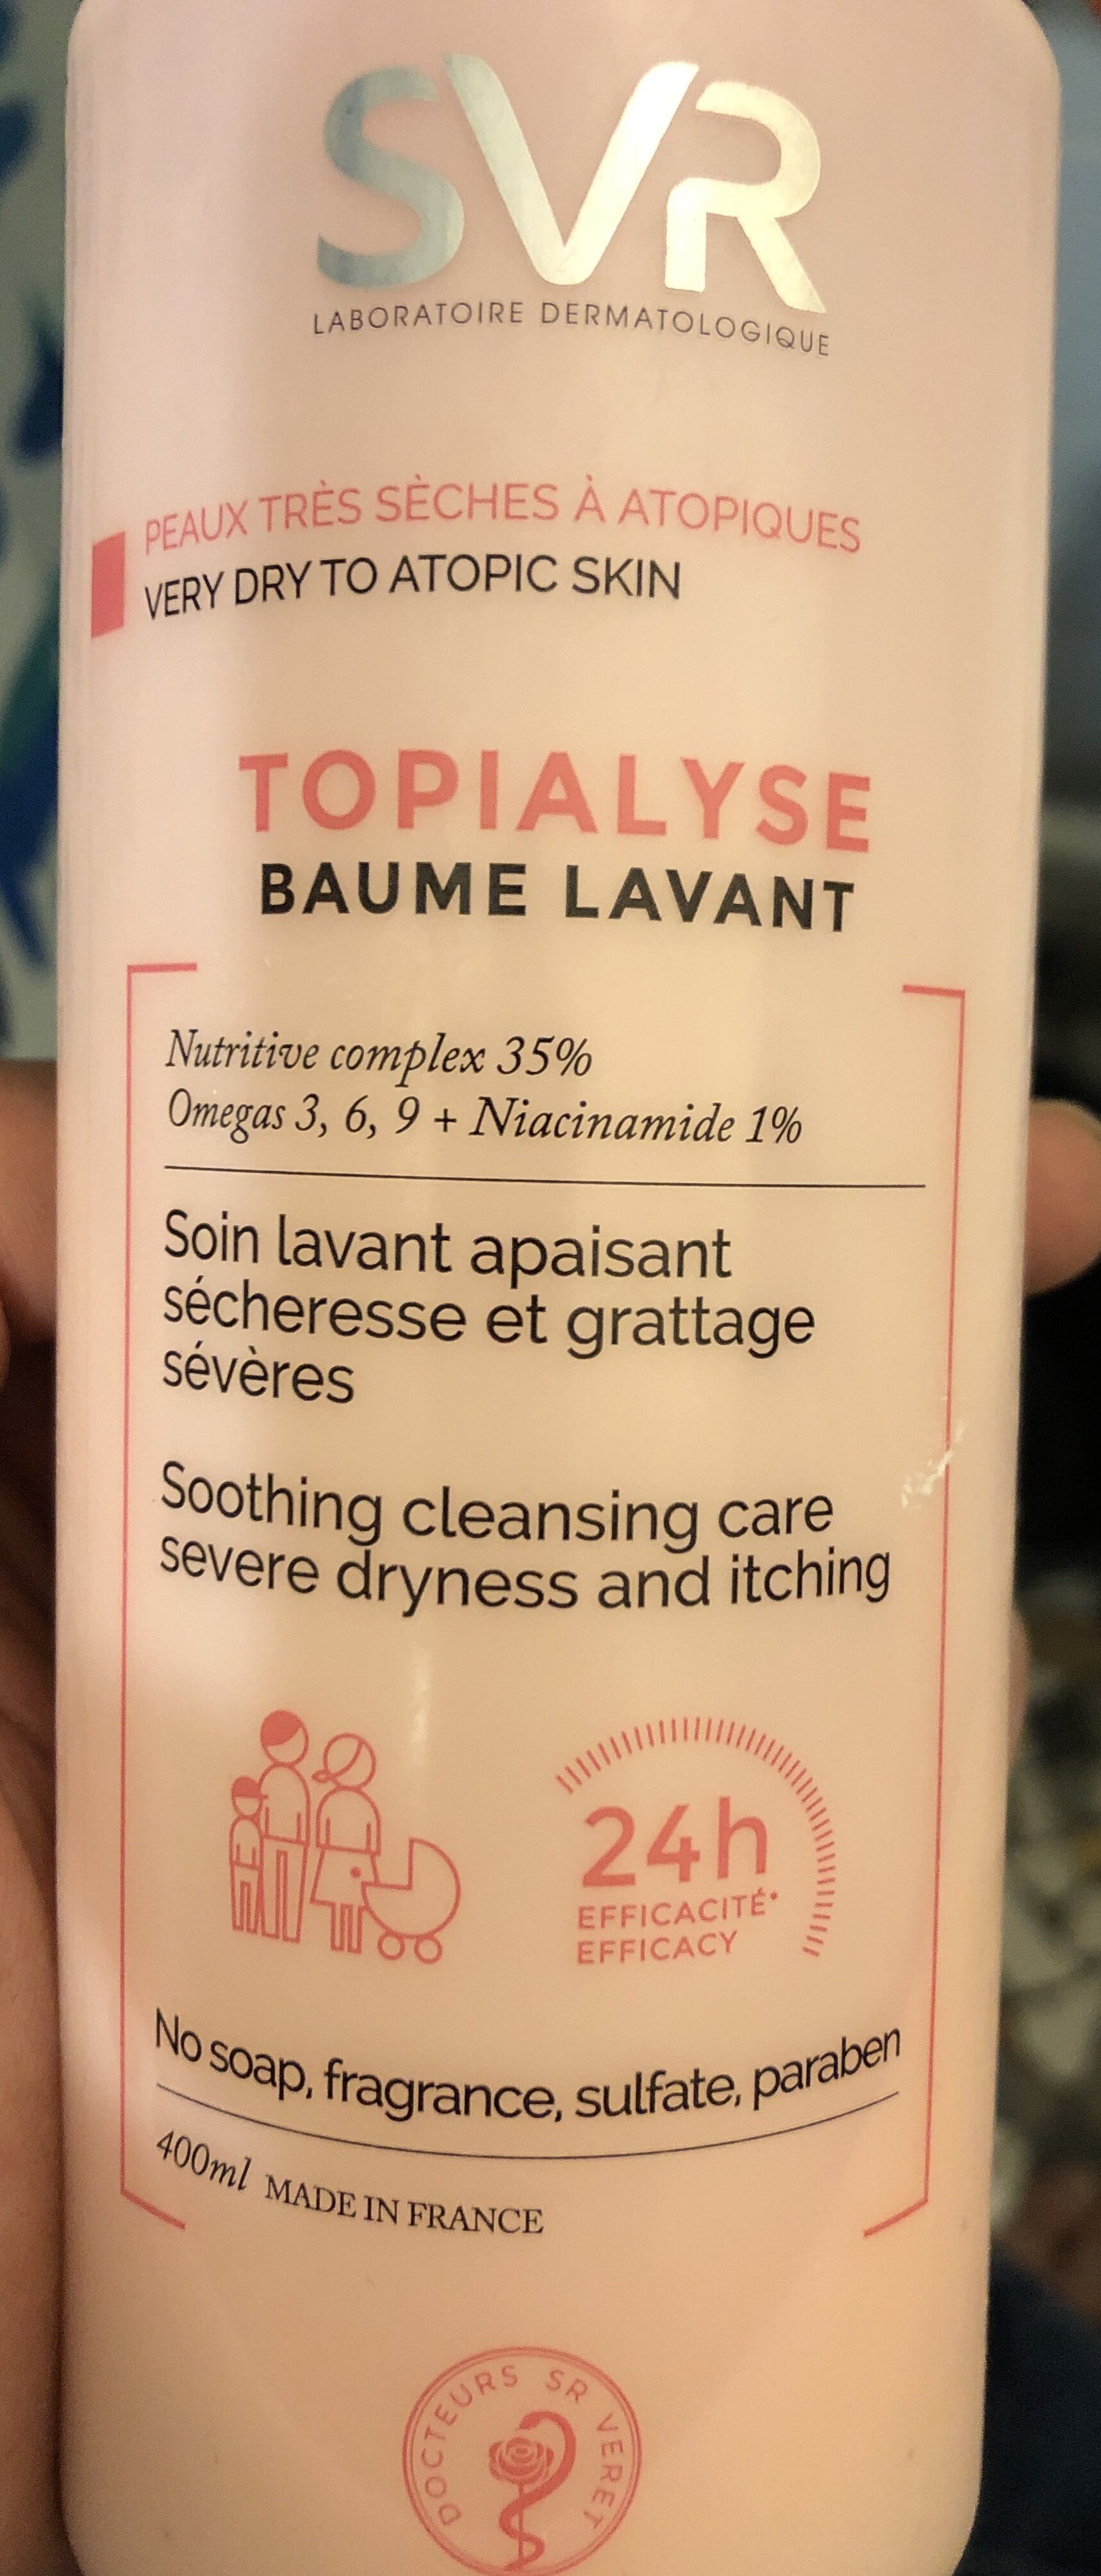 TOPIALYSE Baume lavant - Product - en